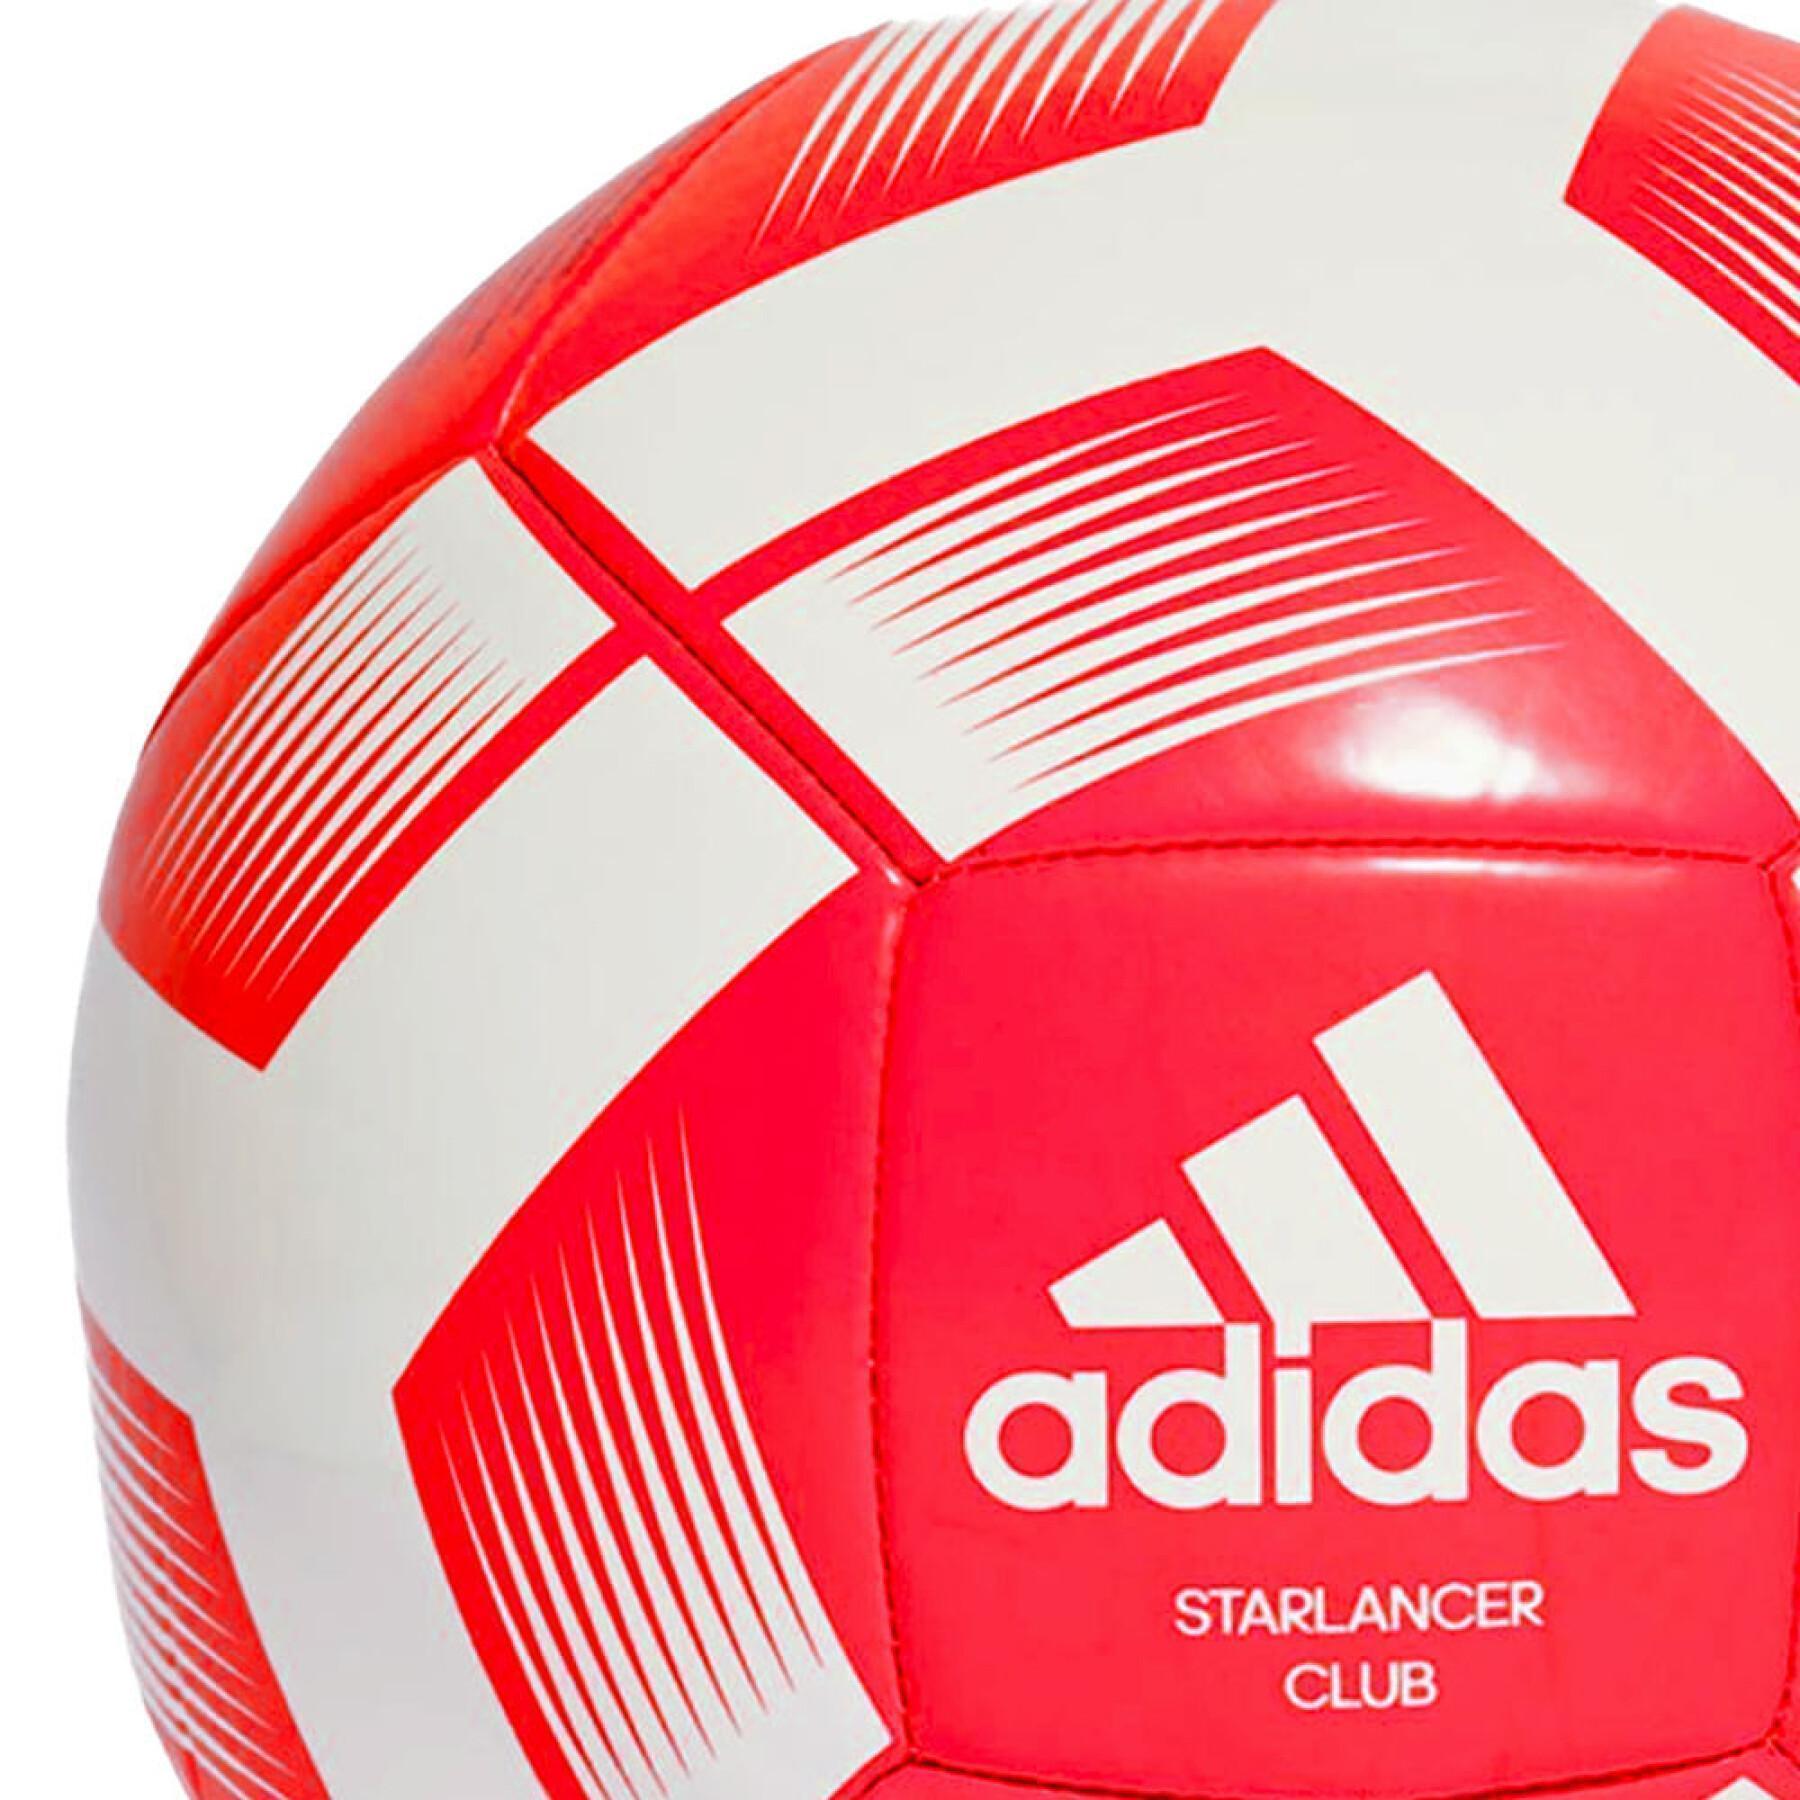 compra balon futbol de la marca adidas on line